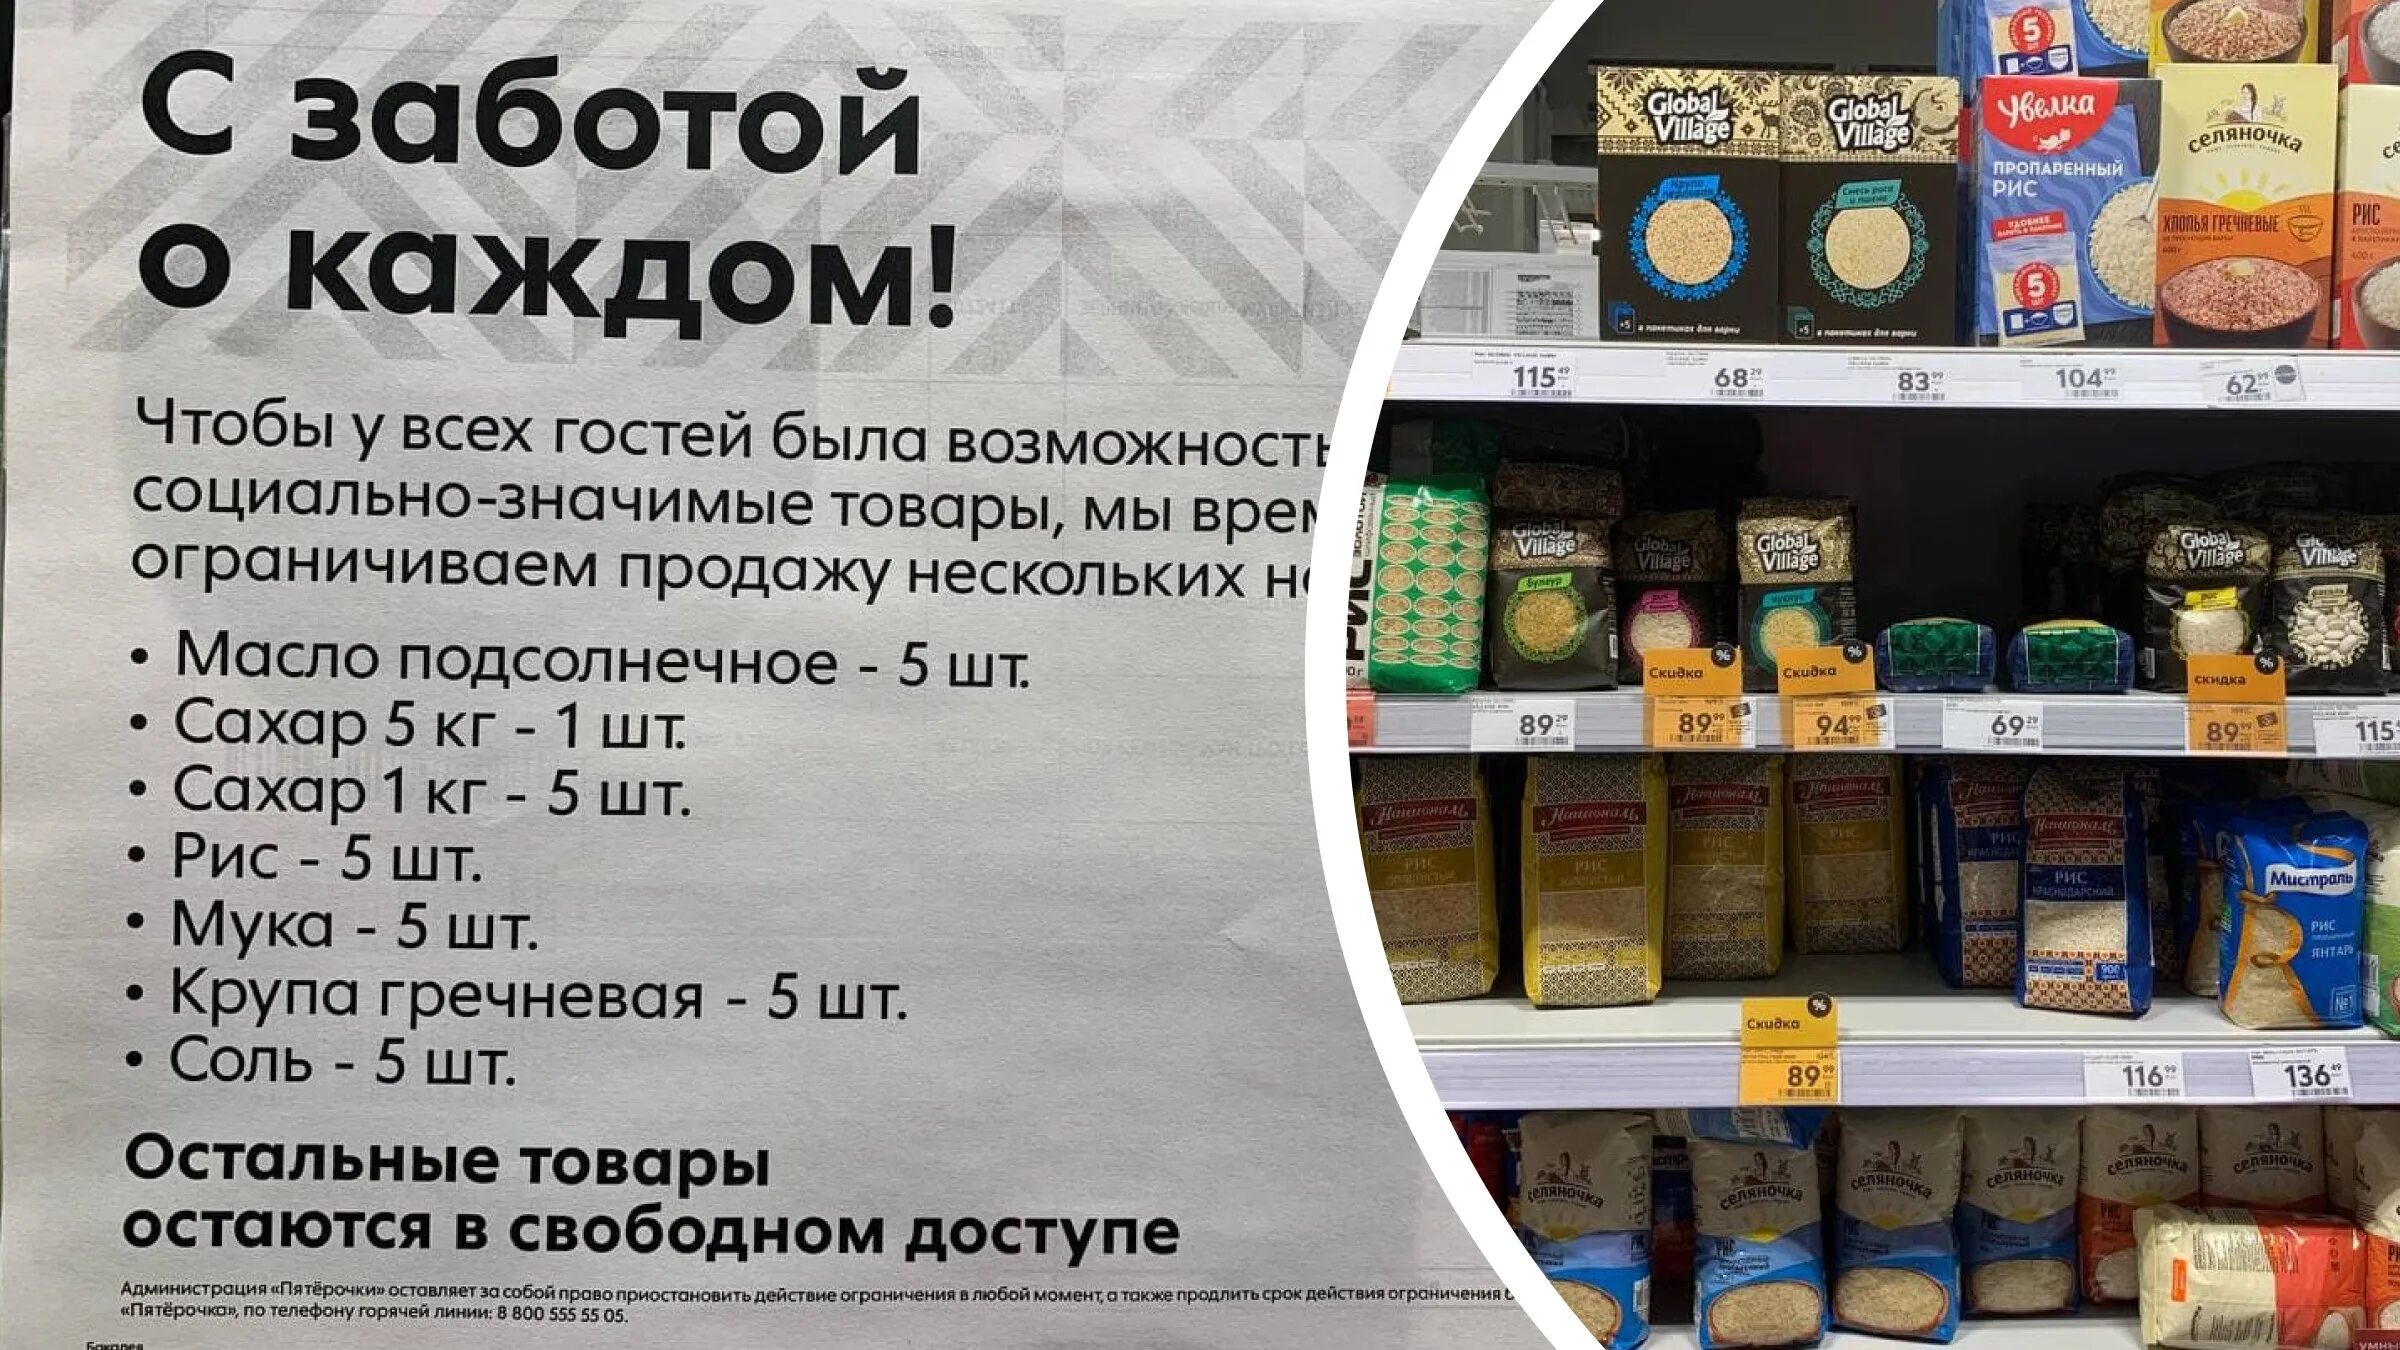 Поставщики продуктов питания. Ограничения продажи продуктов. Европейские товары. Российские продукты.